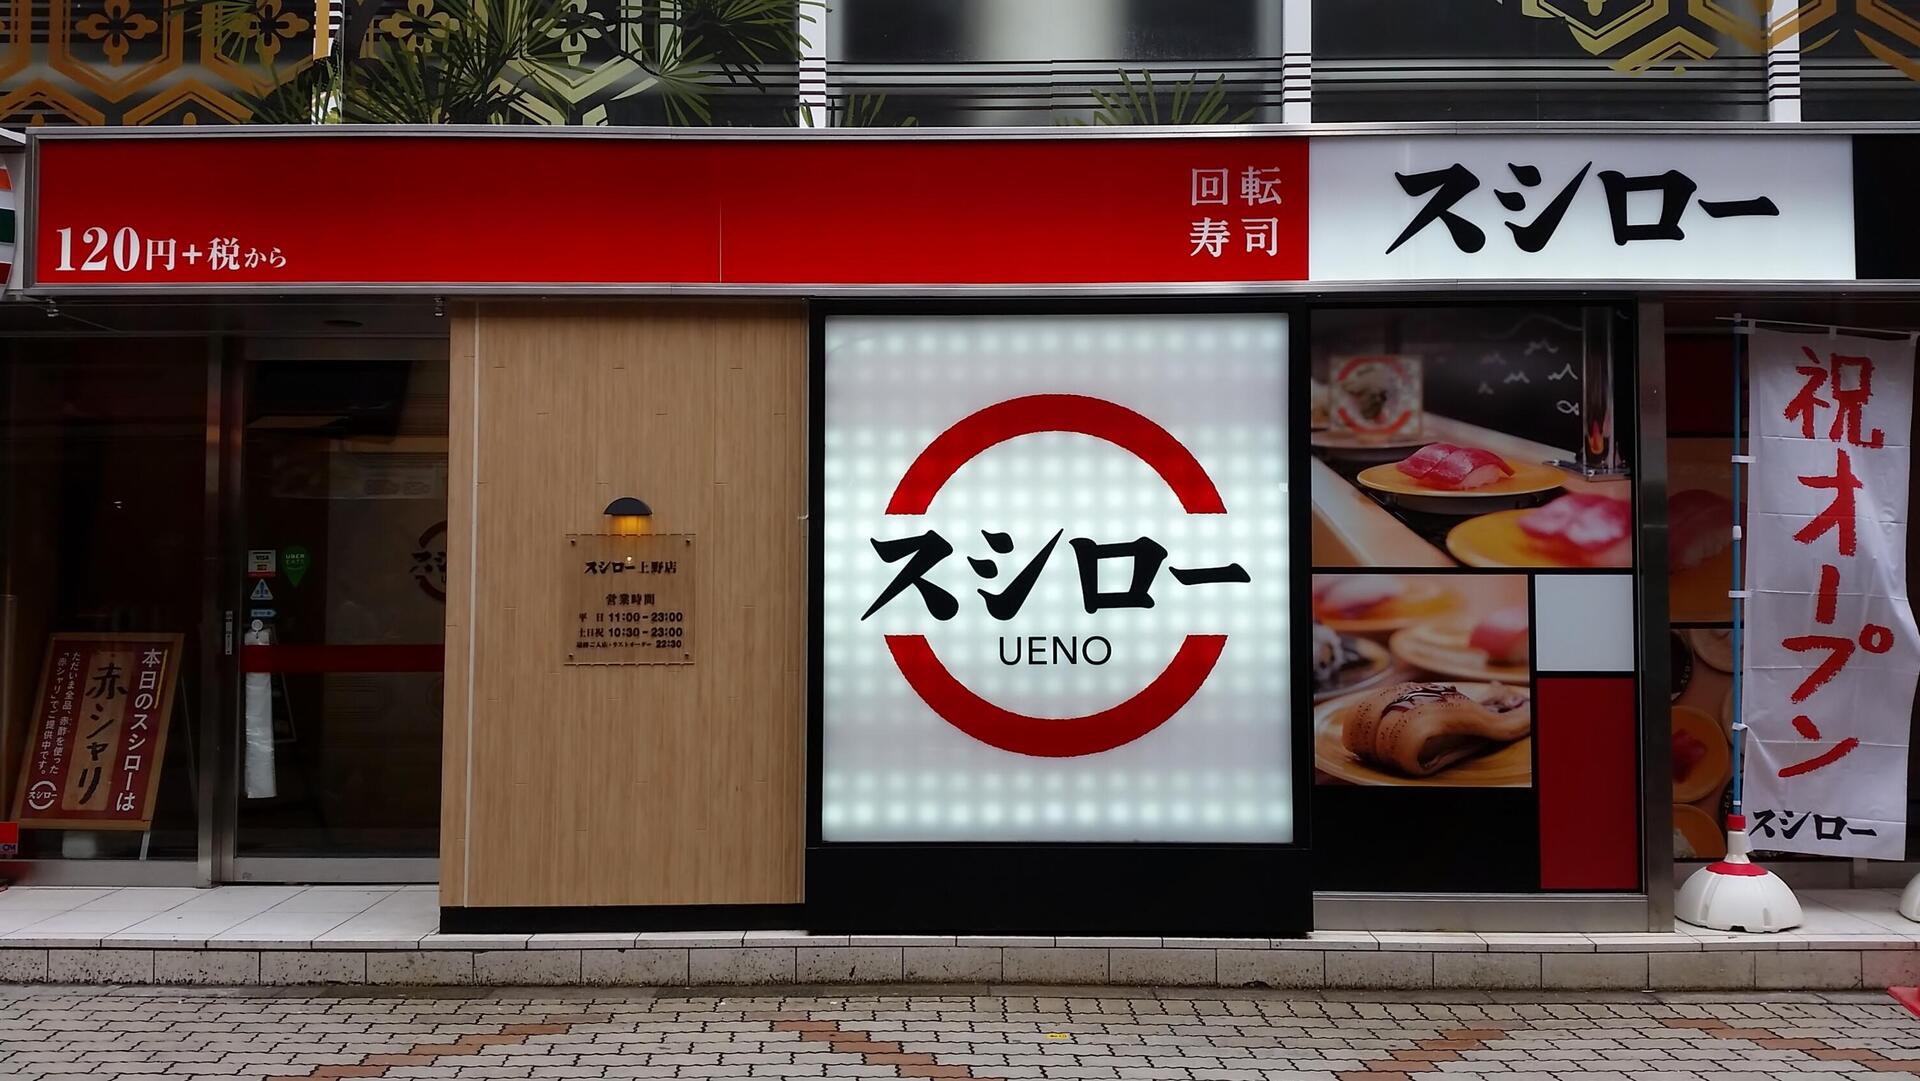 רשת מסעדות סושי אקינדו סושירו טוקיו Akindo Sushiro